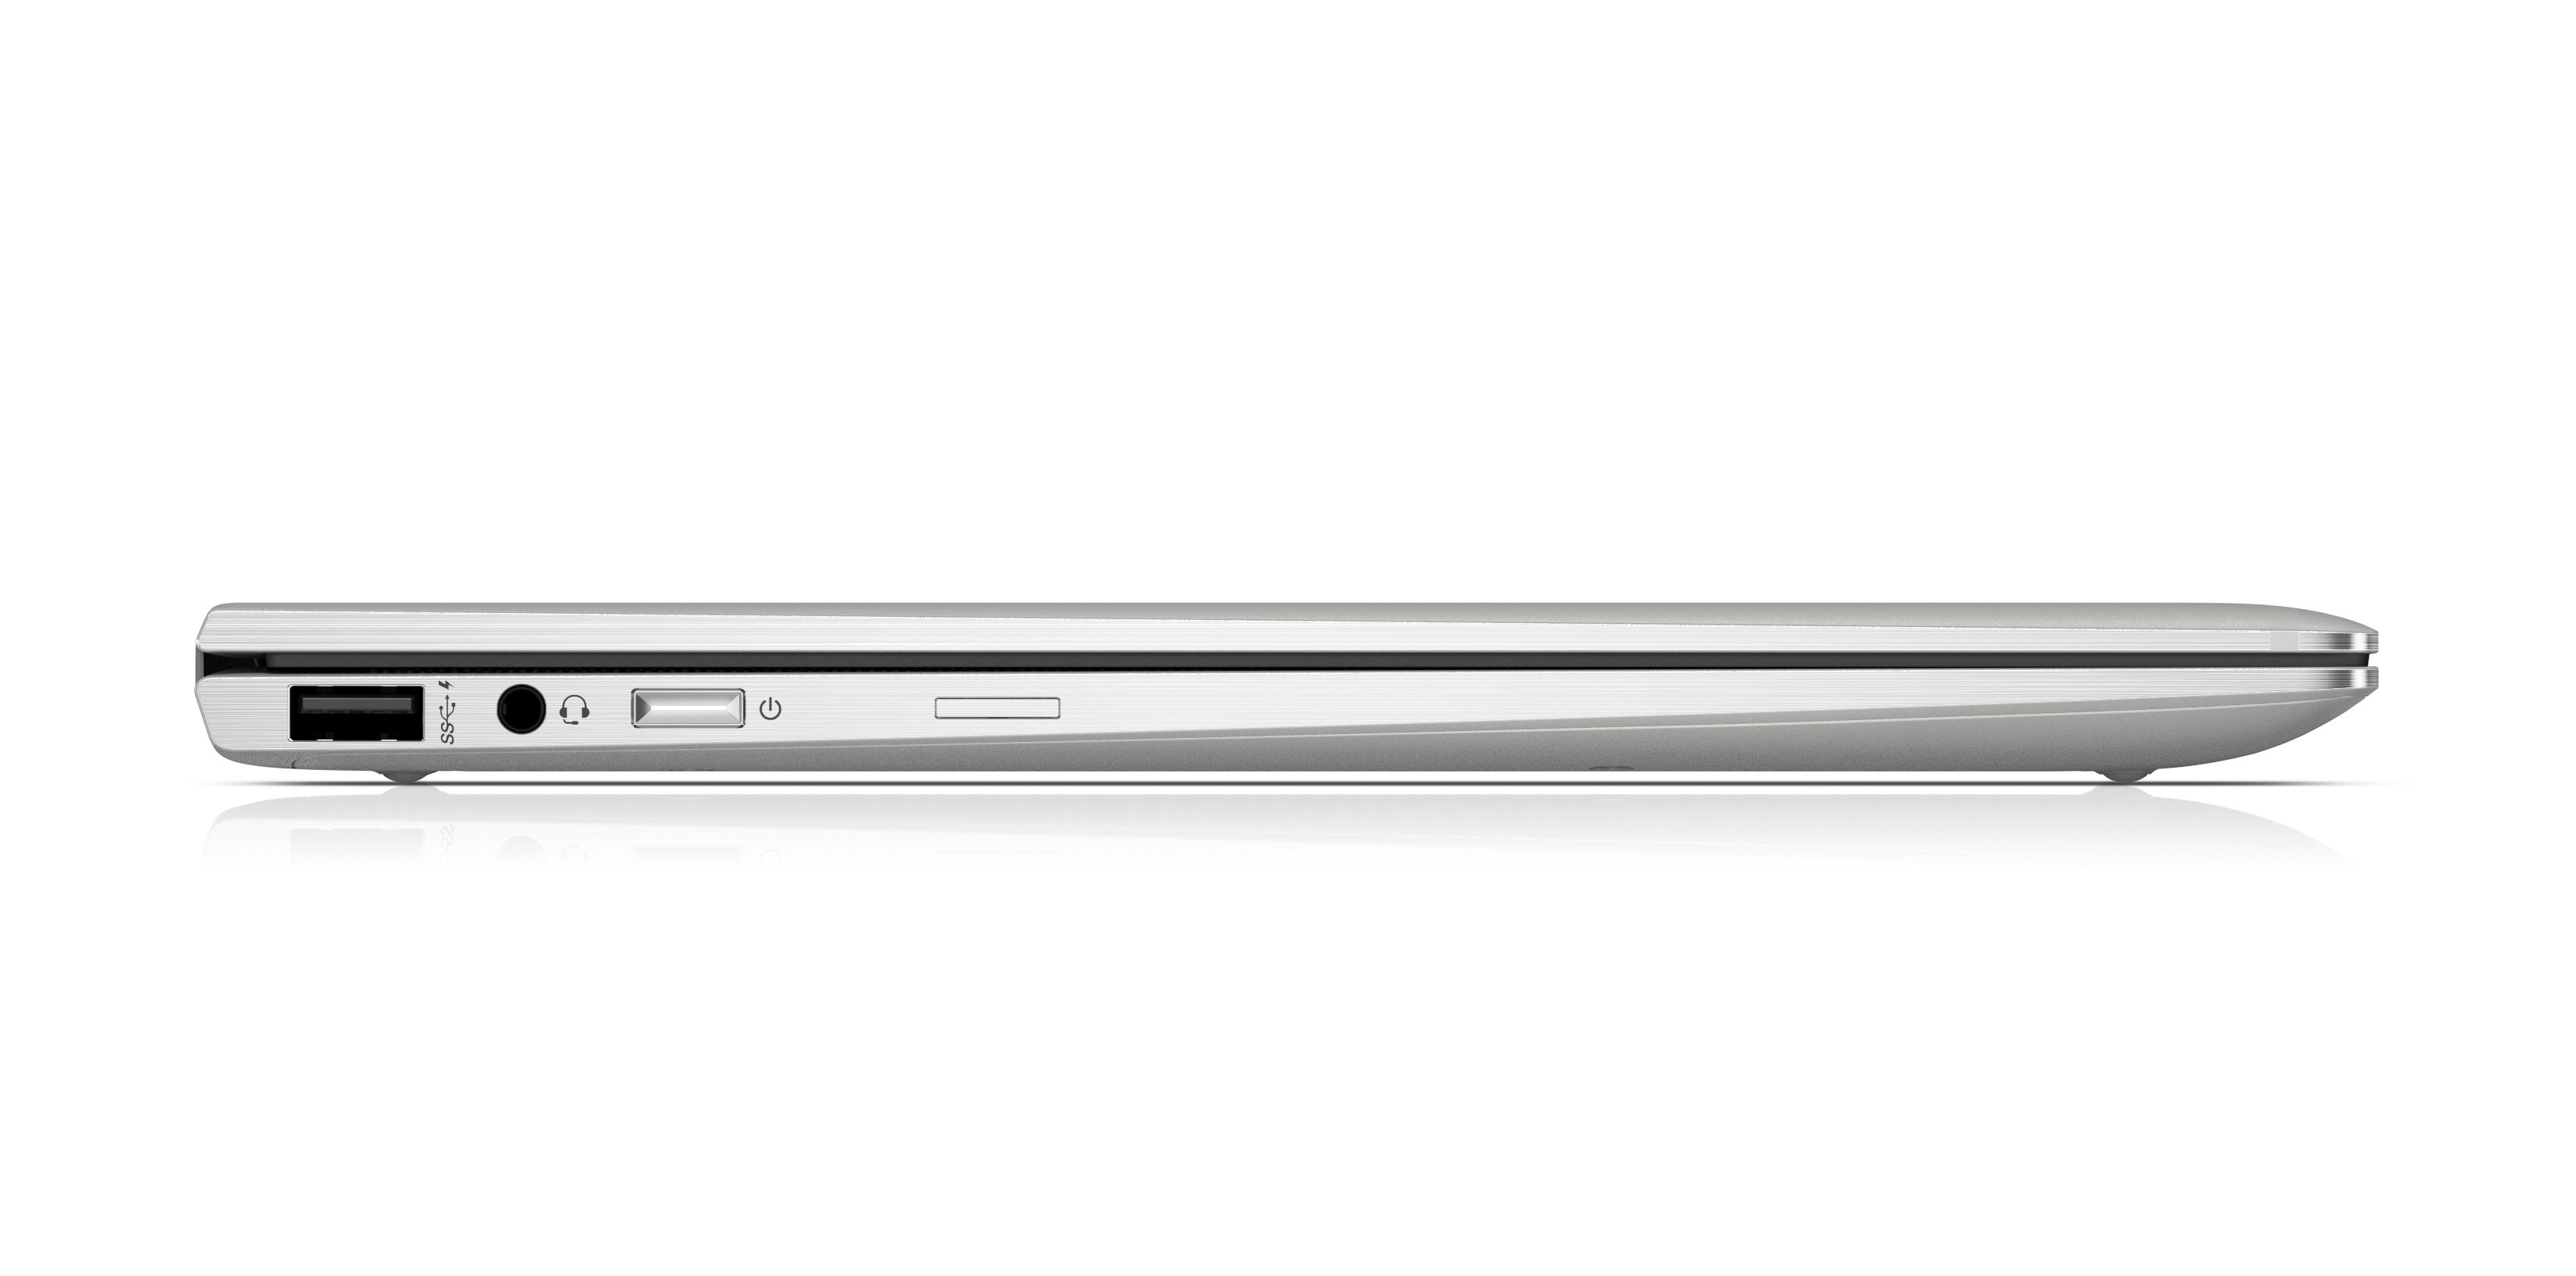 HP EliteBook 1030 x360 G3, un portátil con conexión 4G LTE